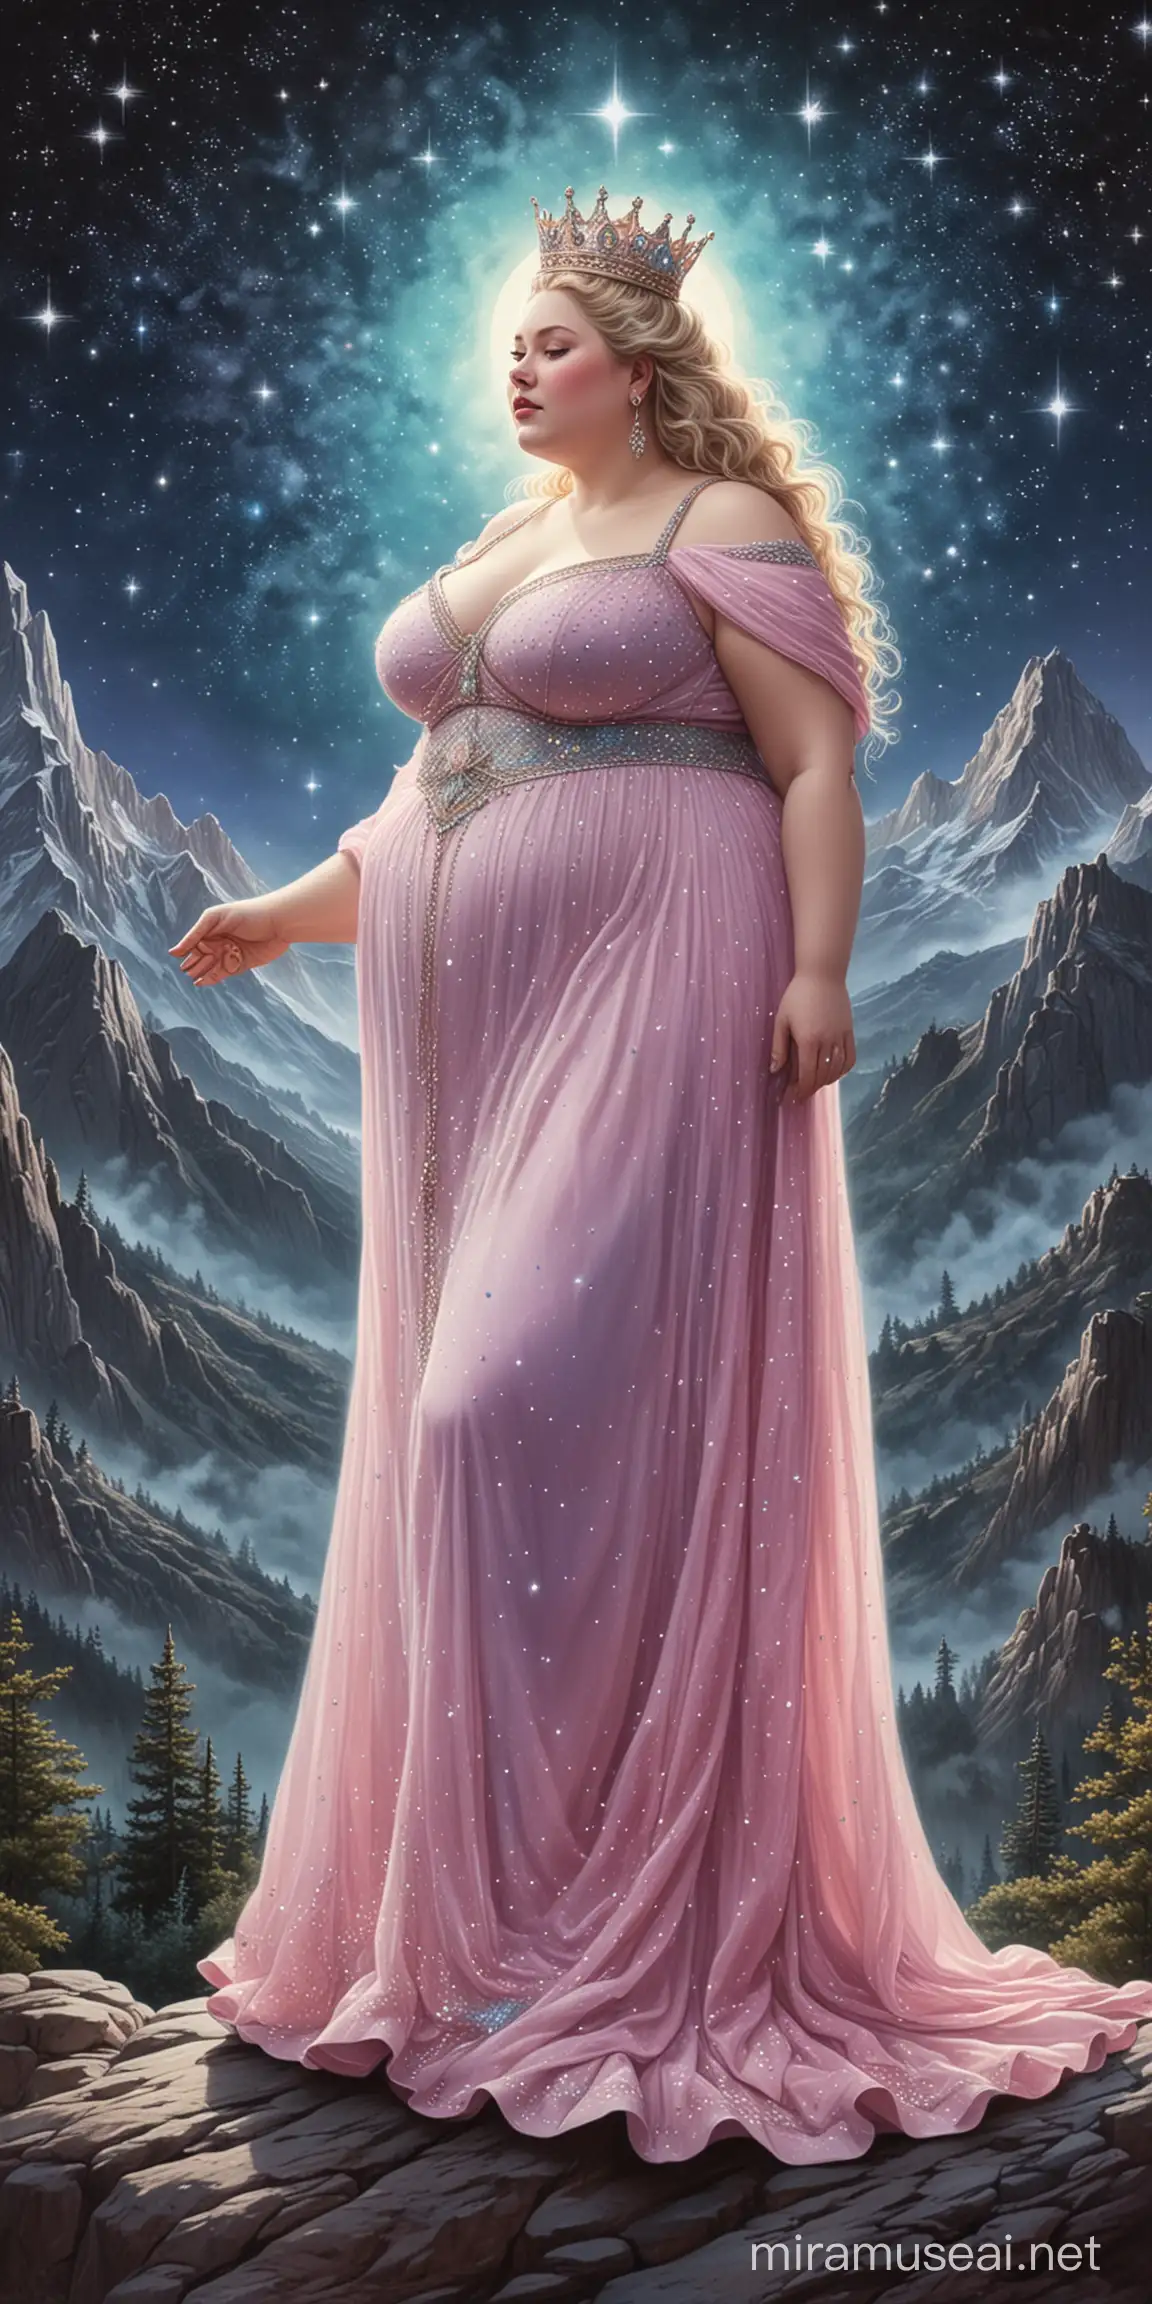 reine obèse et riche dessin aux pastels image décors cartes art divinatoire art pastels montagne en fond ciel de nuit étoiles brillantes